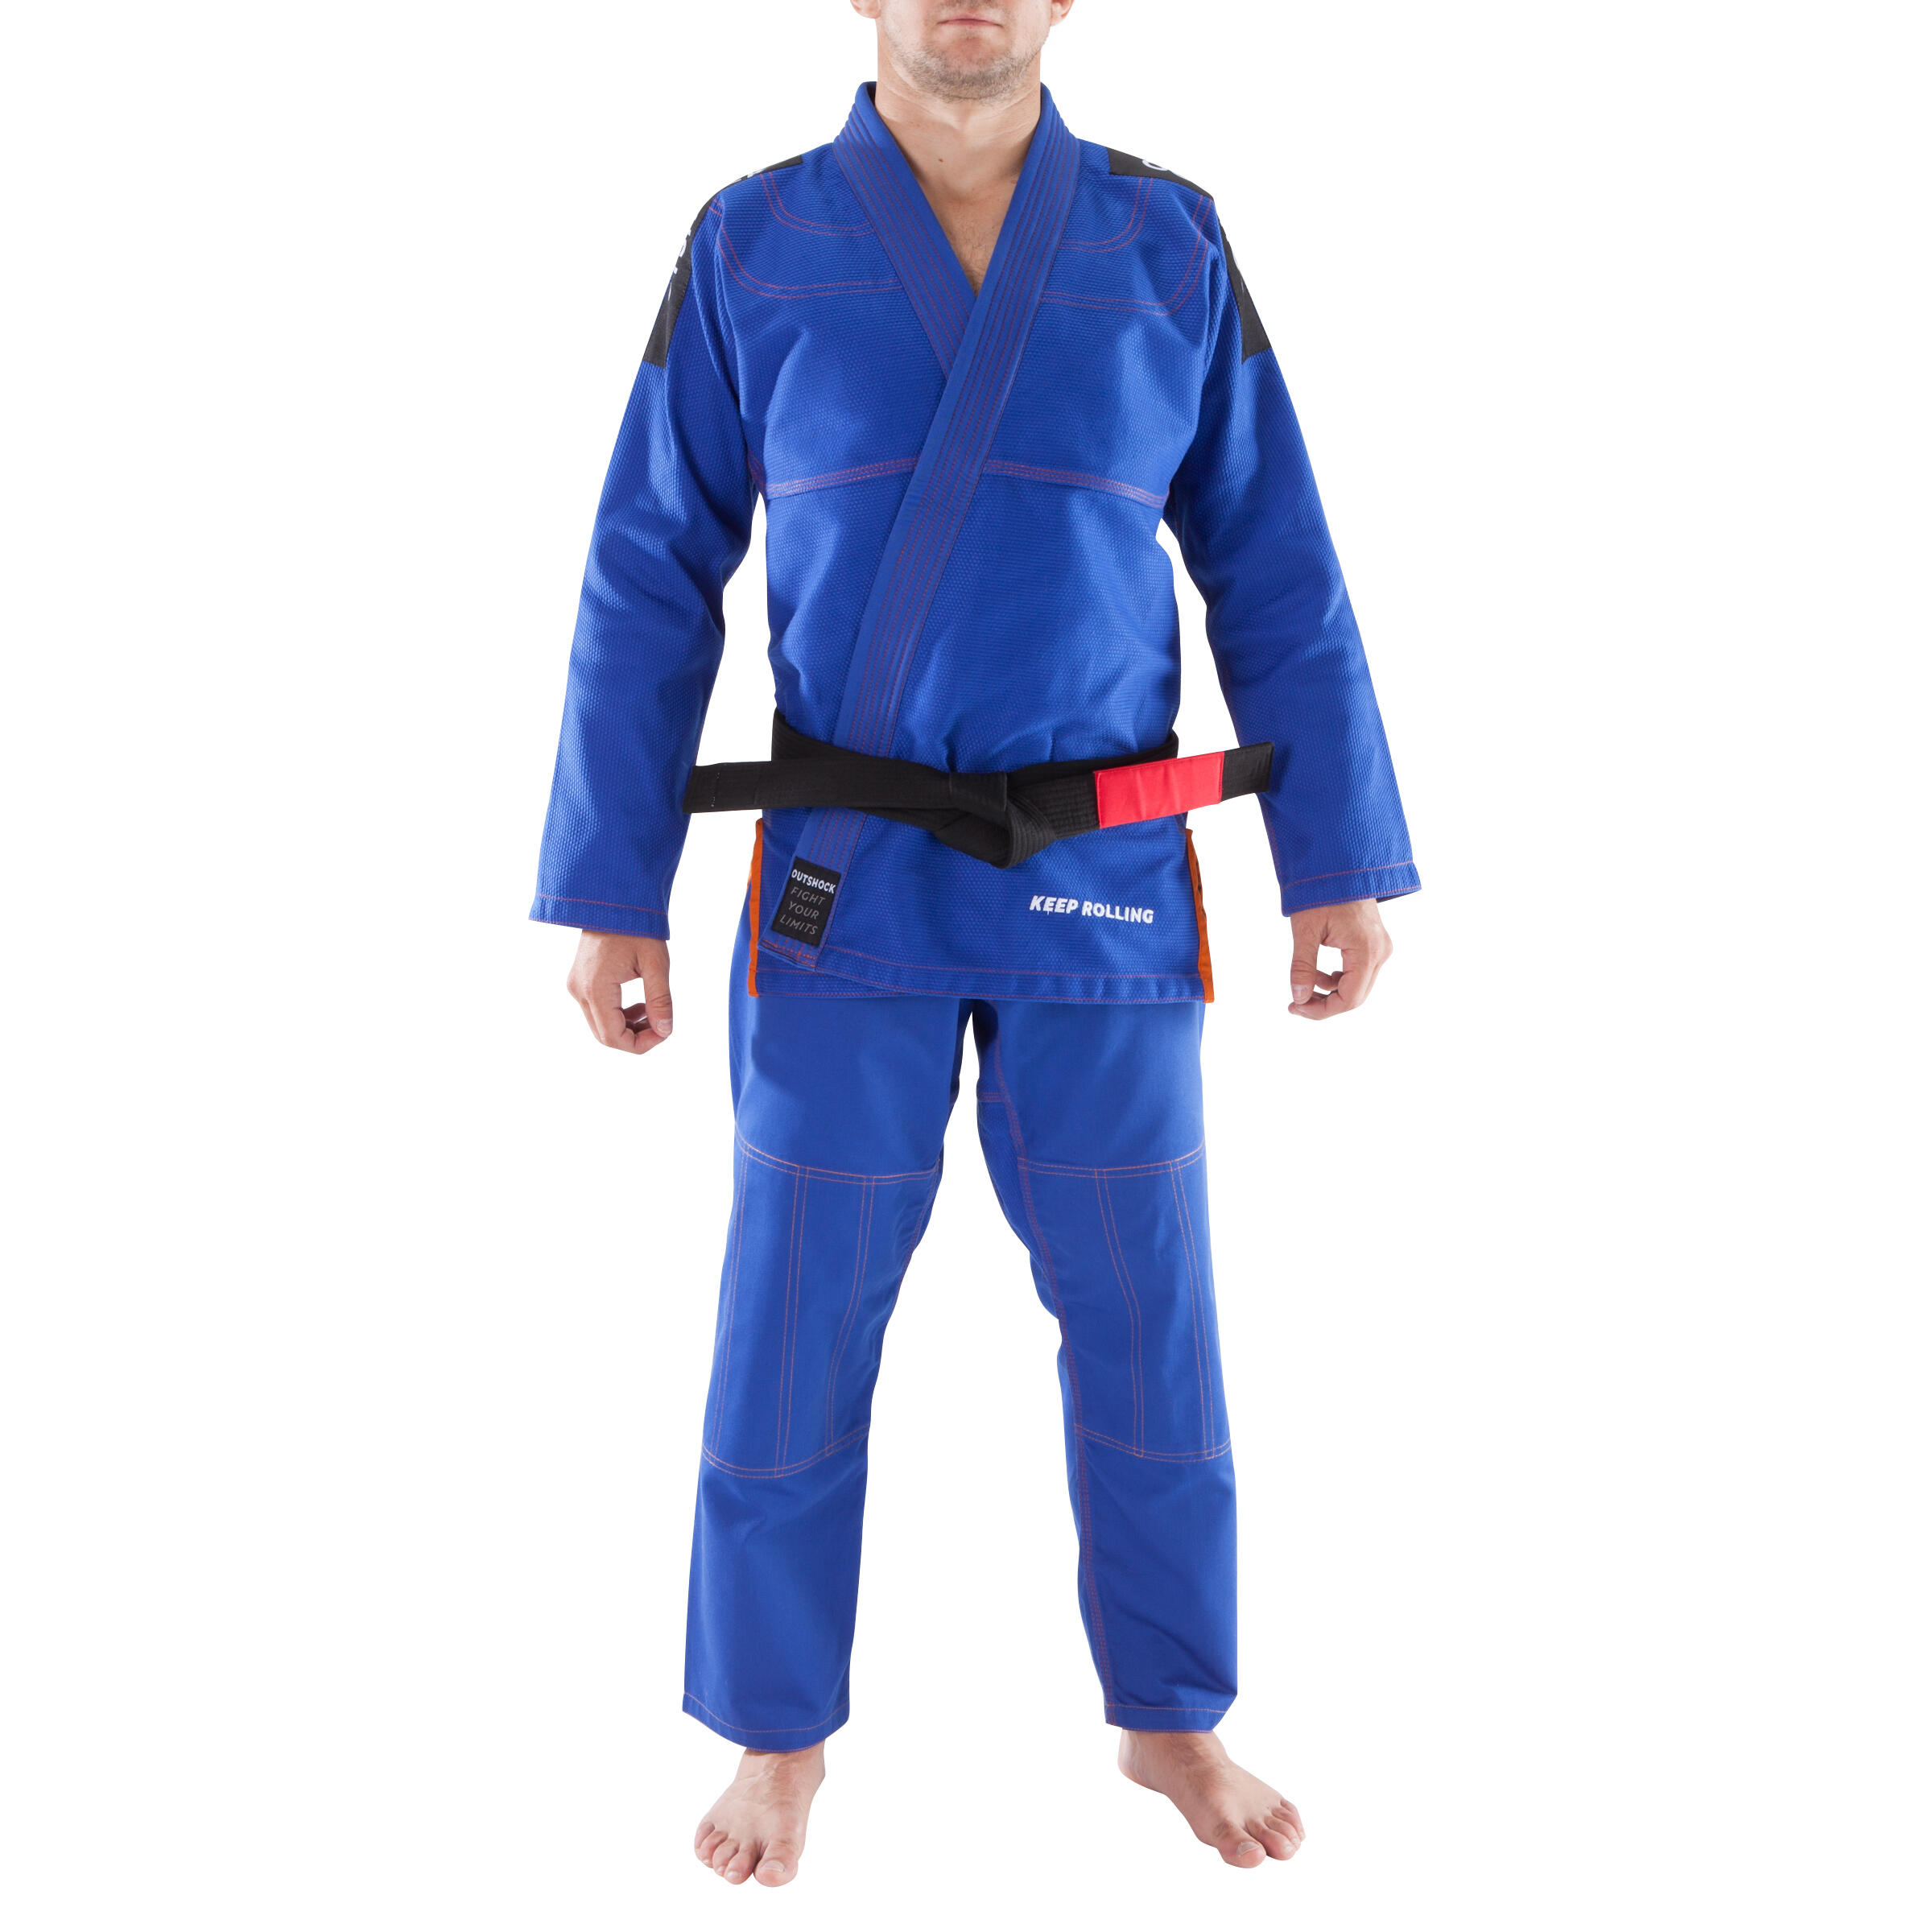 500 Brazilian Jiu-Jitsu Adult Uniform 